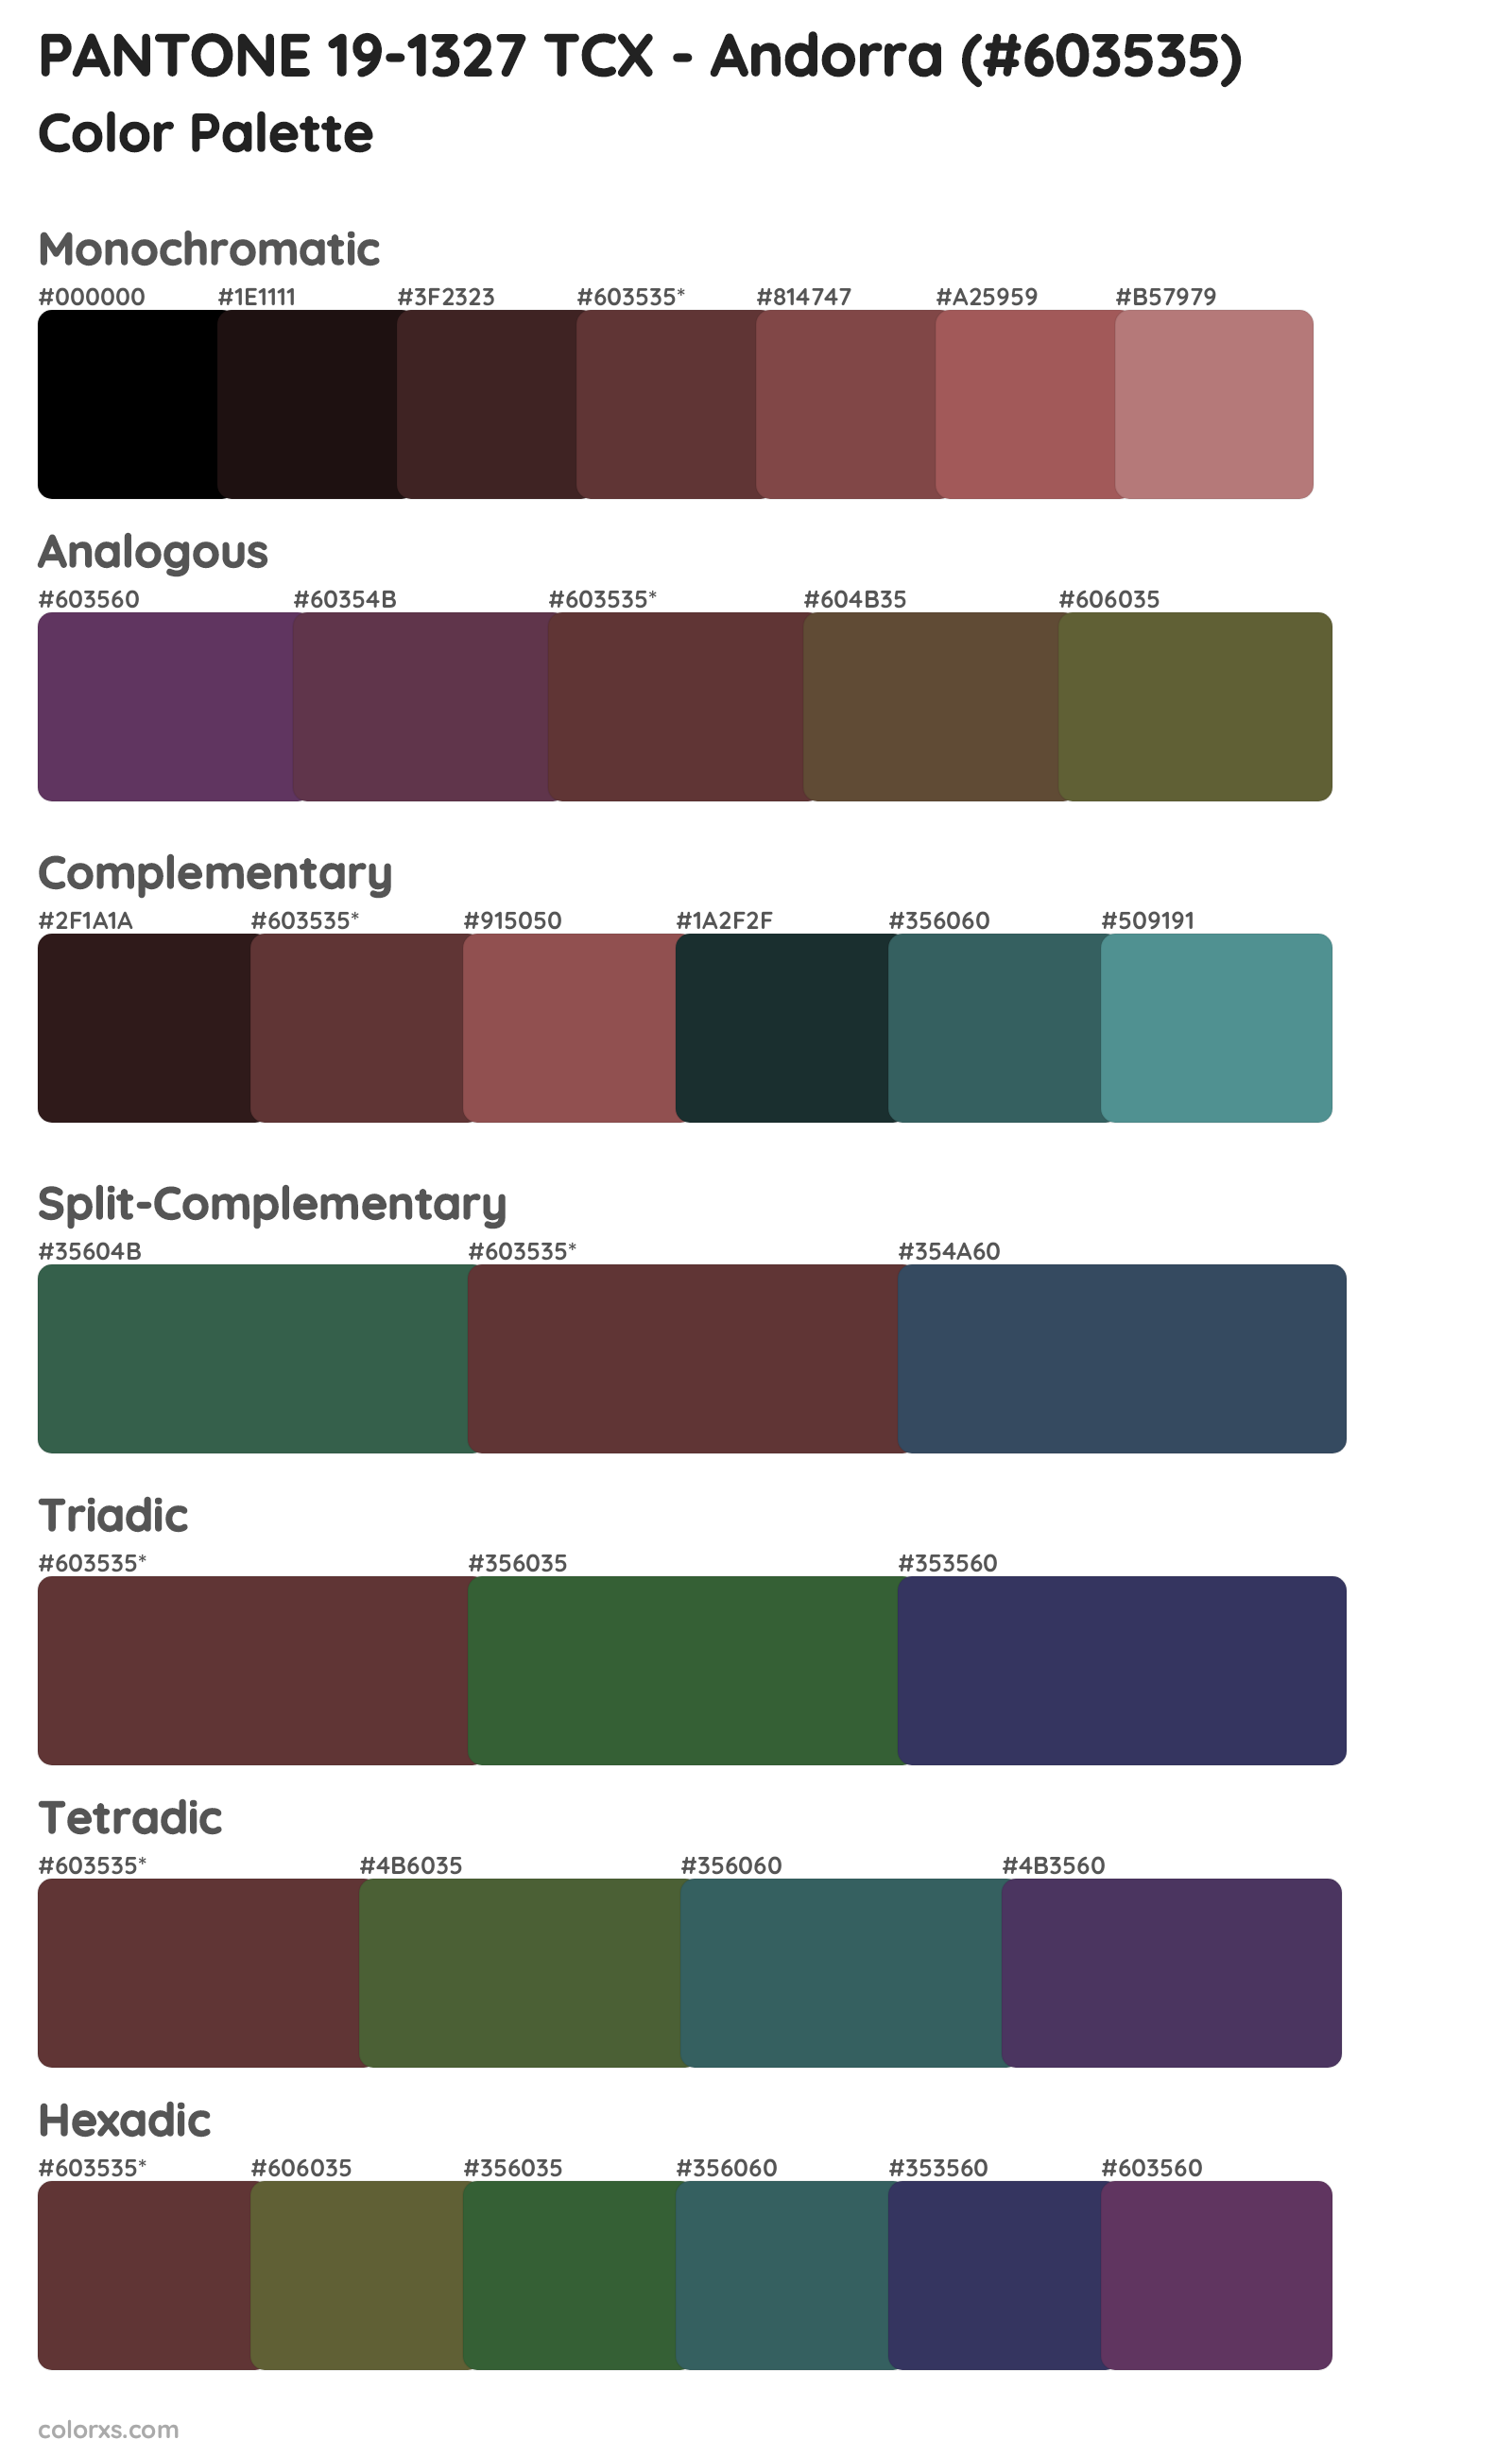 PANTONE 19-1327 TCX - Andorra Color Scheme Palettes